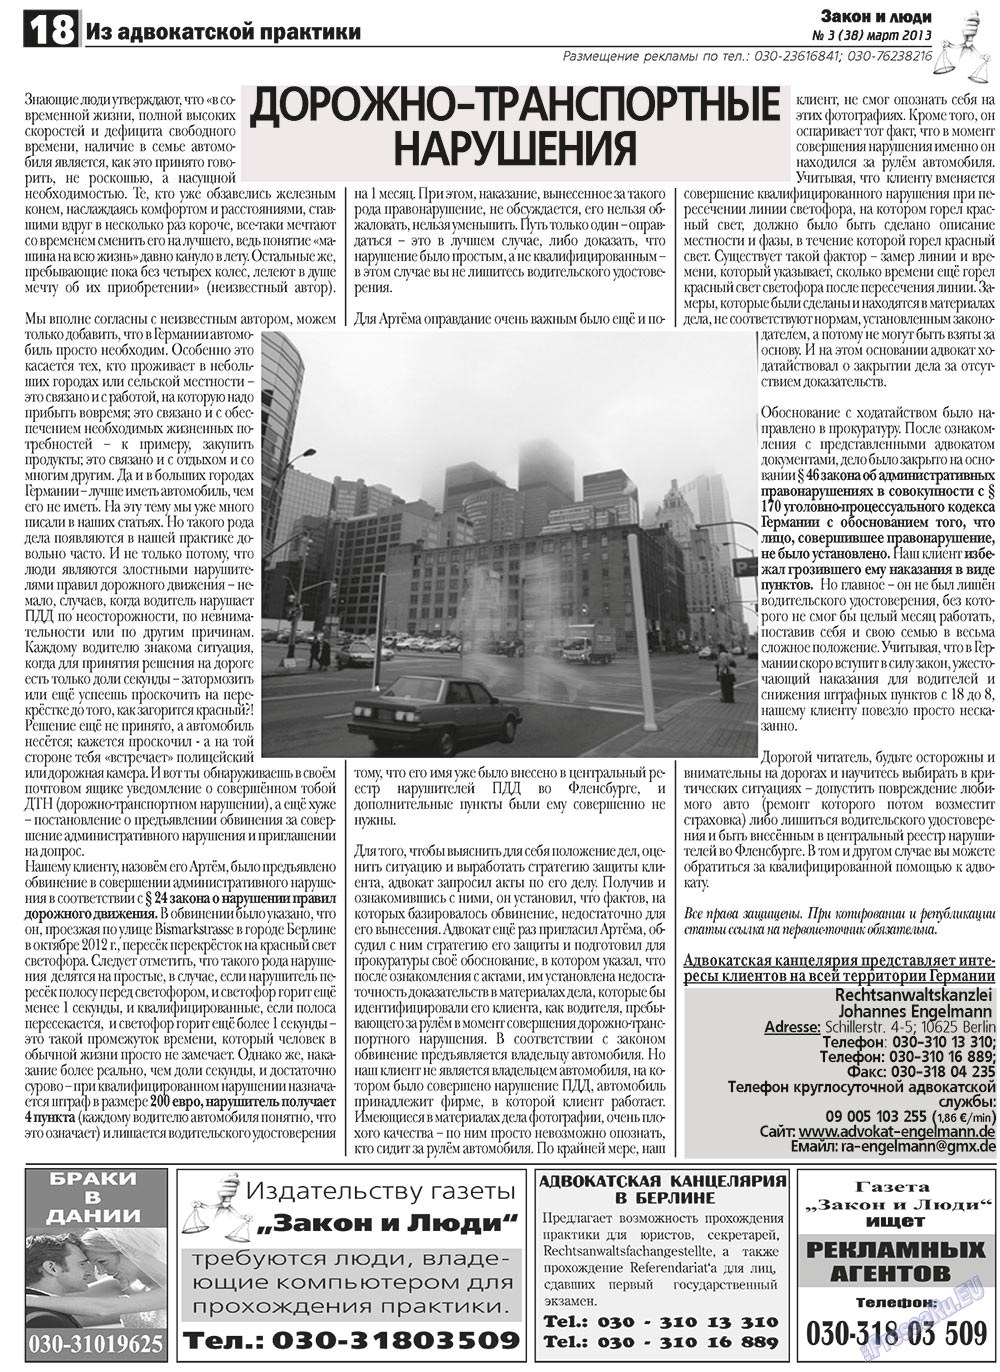 Закон и люди (газета). 2013 год, номер 3, стр. 18